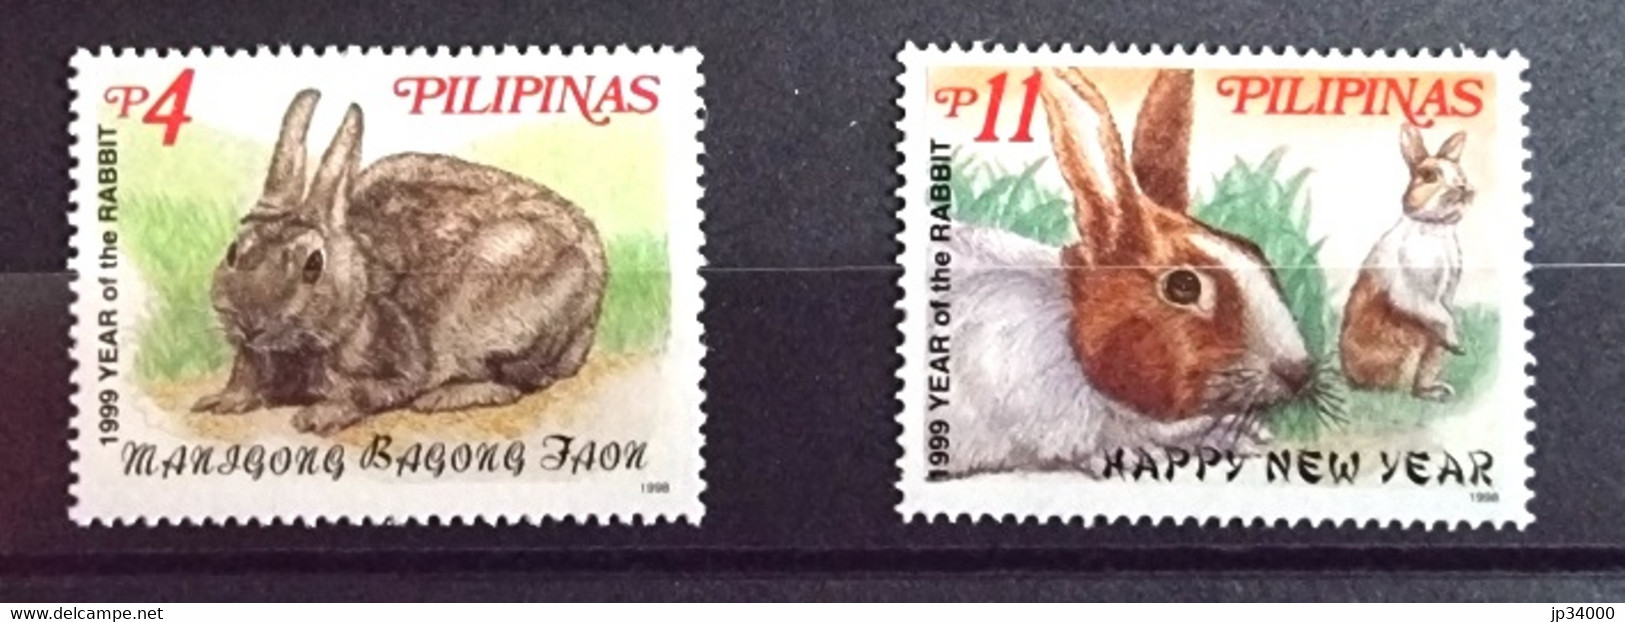 PHILIPPINES-PILIPINAS Lapins, Lapin, Rabbit, Conejo. Année Du Lapin 1999 2 Valeurs Dentelé. ** Neuf Sans Charnière - Konijnen